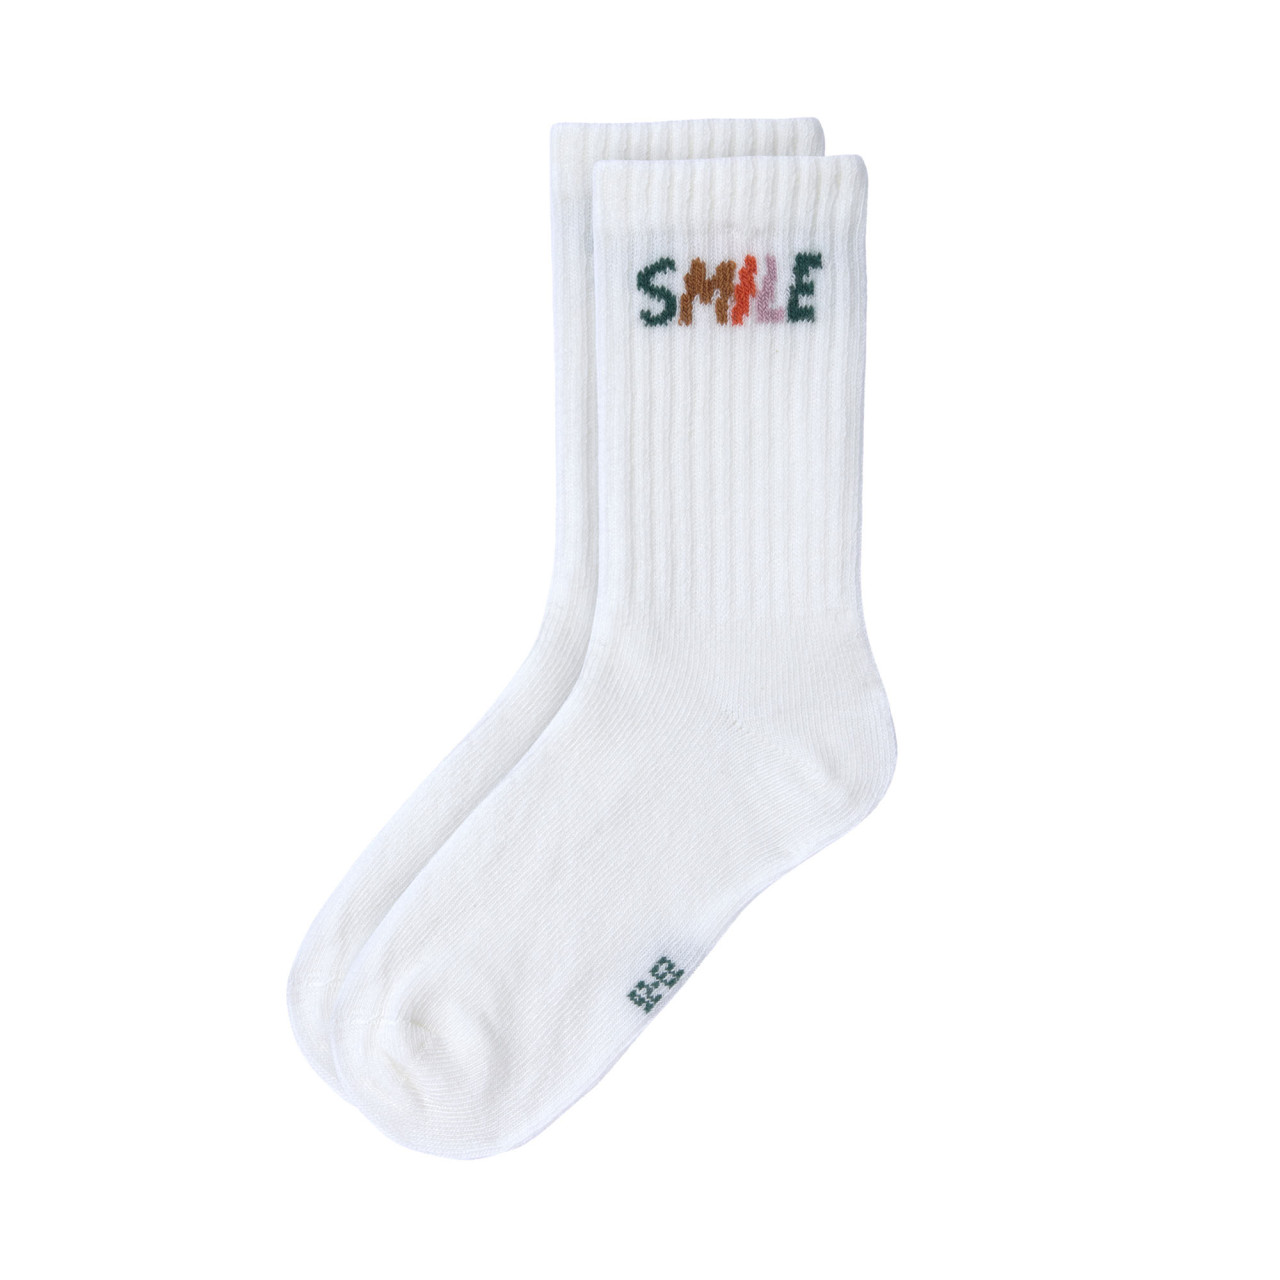 Lässig Socken 3er Set Little Gang 'Smile'